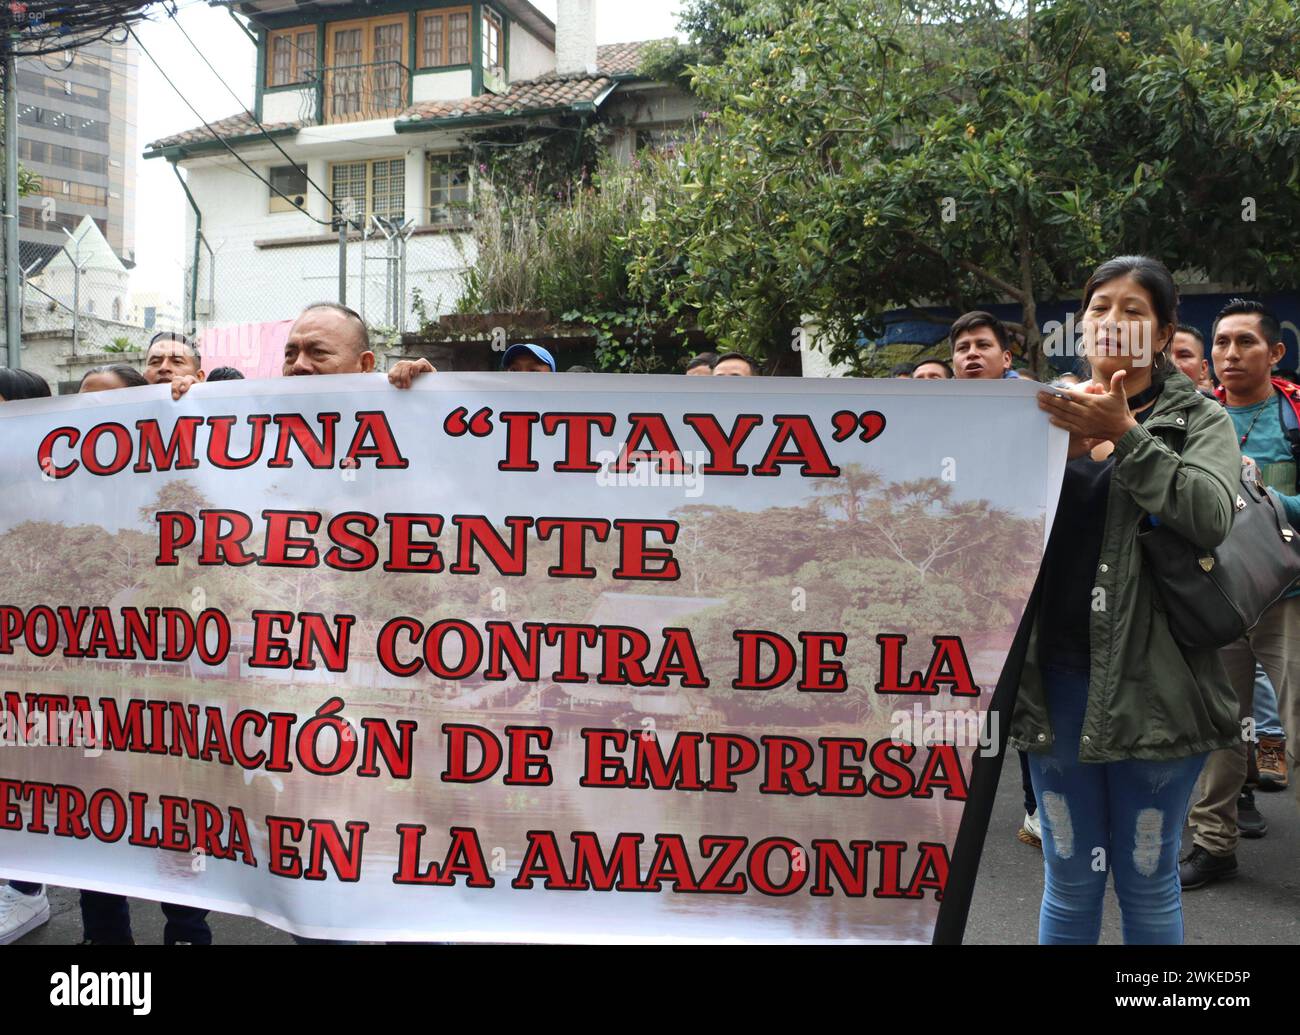 COMUNEROS-KICHWAS-CORTE-CONSTITUCIINAL Quito, martes 20 de febrero del 2024 Comuneros y comuneras Kichwas de la Amazonia, acudieron a un planton en la Corte Constitucional, para solicitar se de respuesta al caso del derrame de 15800 de hidrocarburos derramados el 7 de abril del 2020, que afectan a sus comunidades. Fotos:Rolando Enriquez/API Quito Pichincha Ecuador EVN-COMUNEROS-KICHWAS-CORTE-CONSTITUCIINAL-0c1c7d8eb140013a45bf2a7b73deebc8 *** KICHWAS COMMUNALS IN THE CONSTITUTIONAL COURT Quito, Tuesday, February 20, 2024 Kichwa community members of the Amazon, went to a sit-in at the Constitut Stock Photo